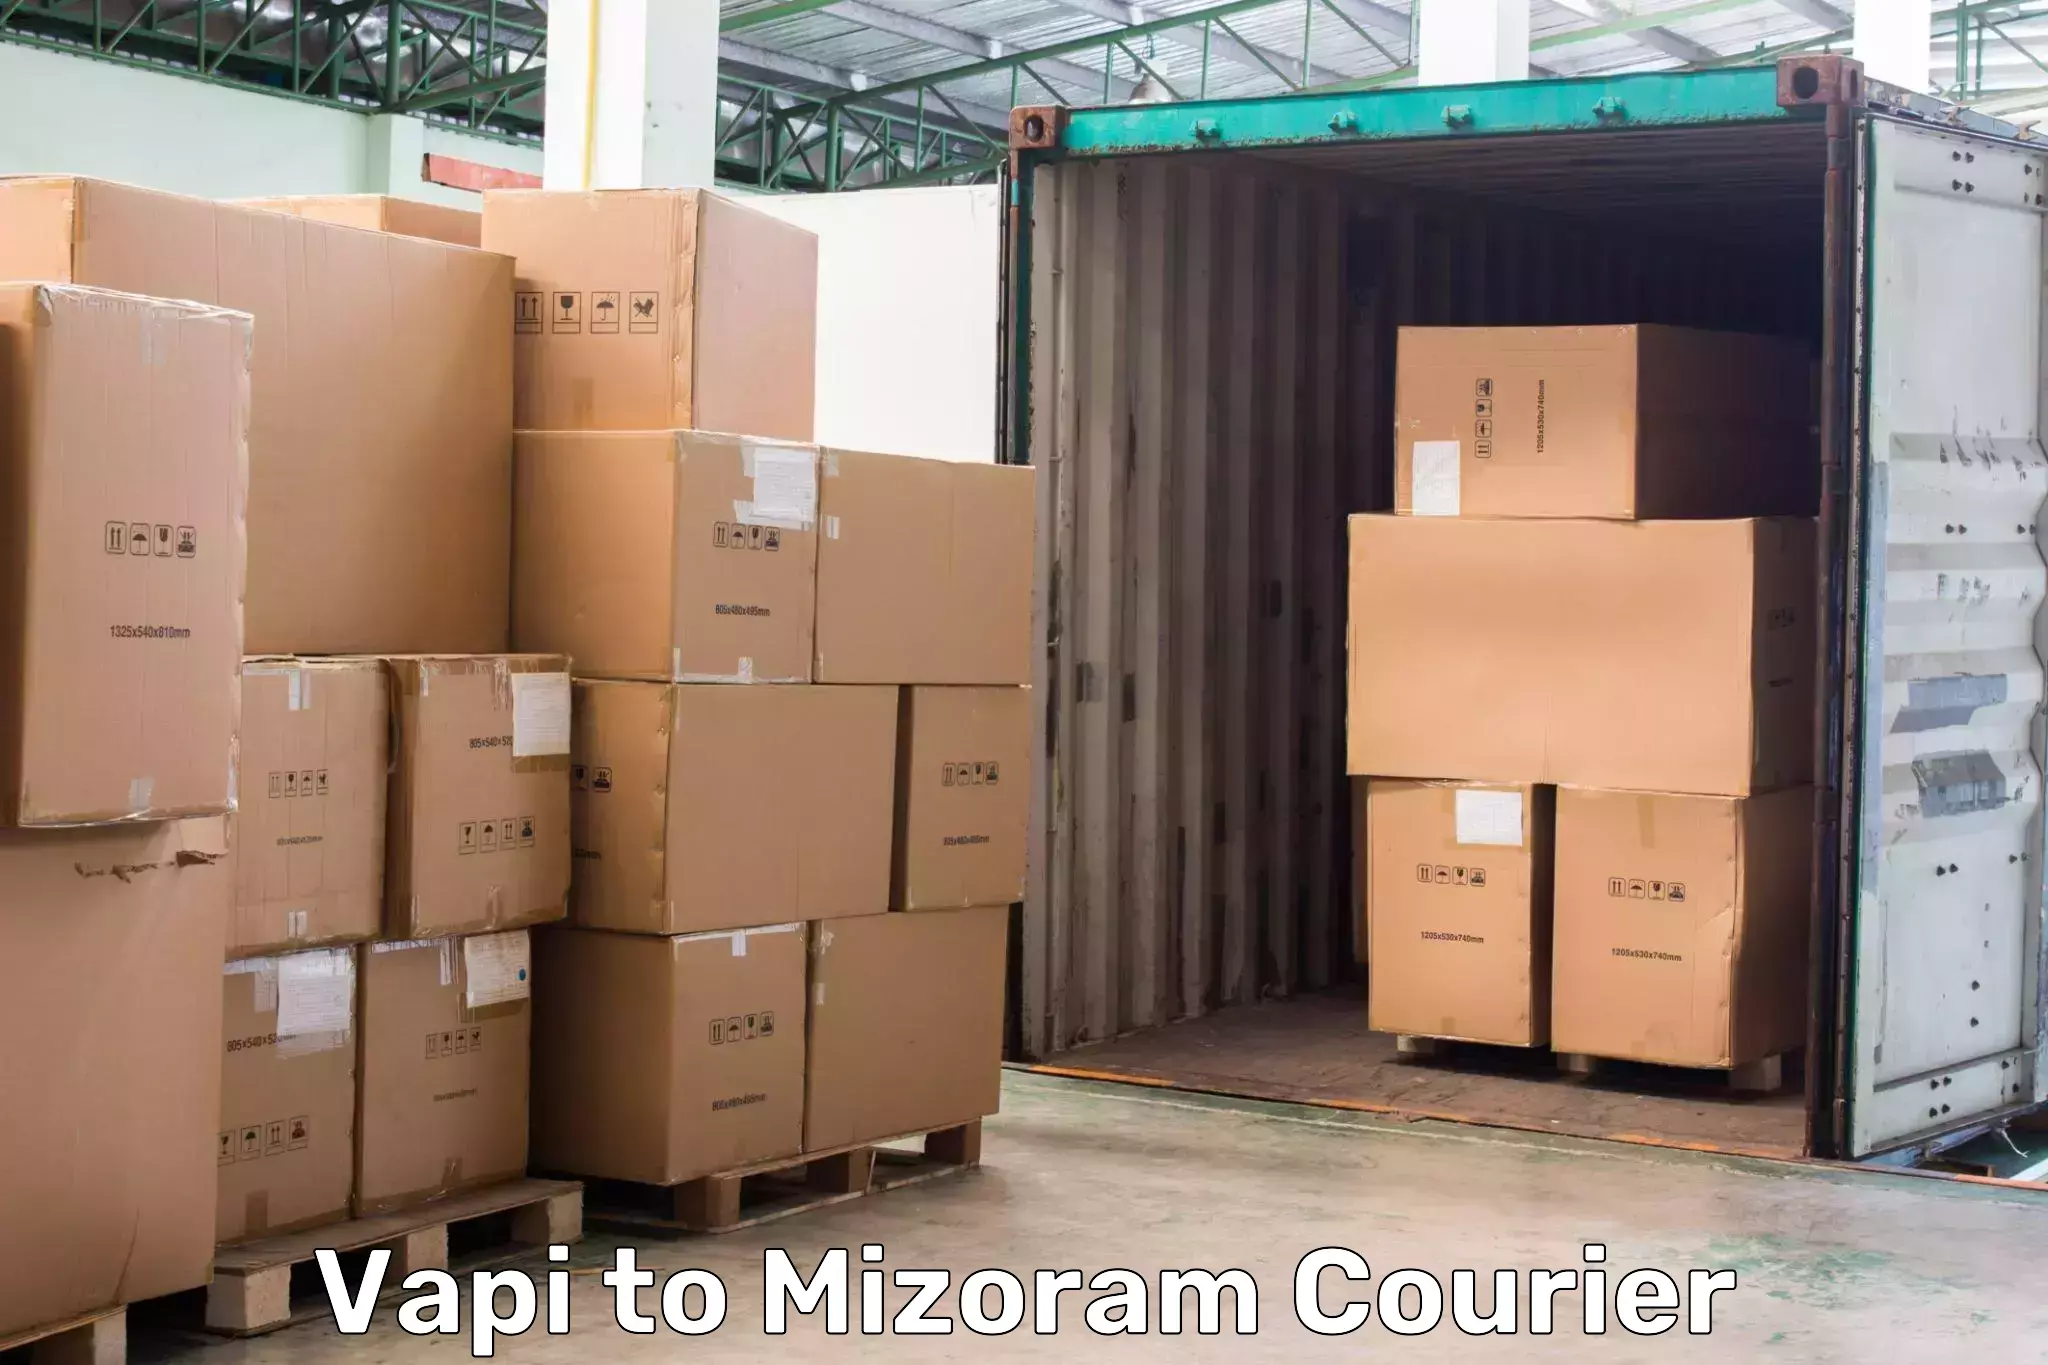 High-priority parcel service Vapi to Mizoram